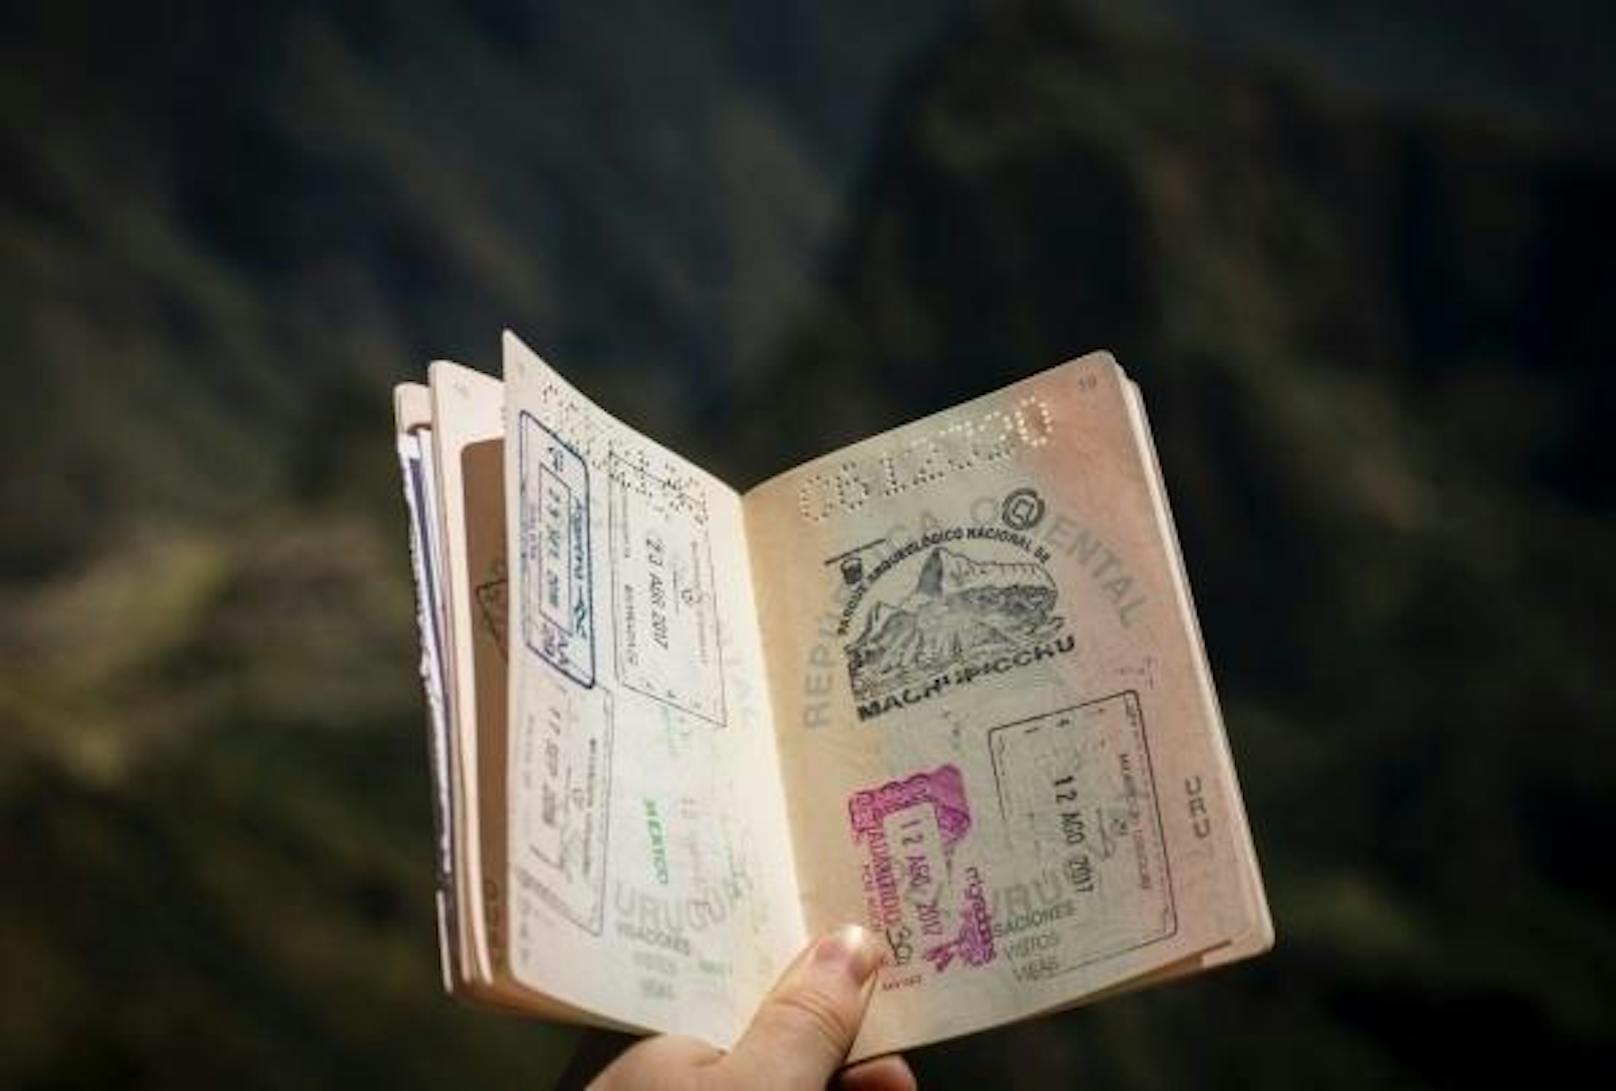 Bei diesem System müssen Passagiere ein Foto ihres Passes sowie des Visums hochladen und belegen, dass sie für die Zeit des Aufenthalts über ausreichend finanzielle Mittel verfügen.